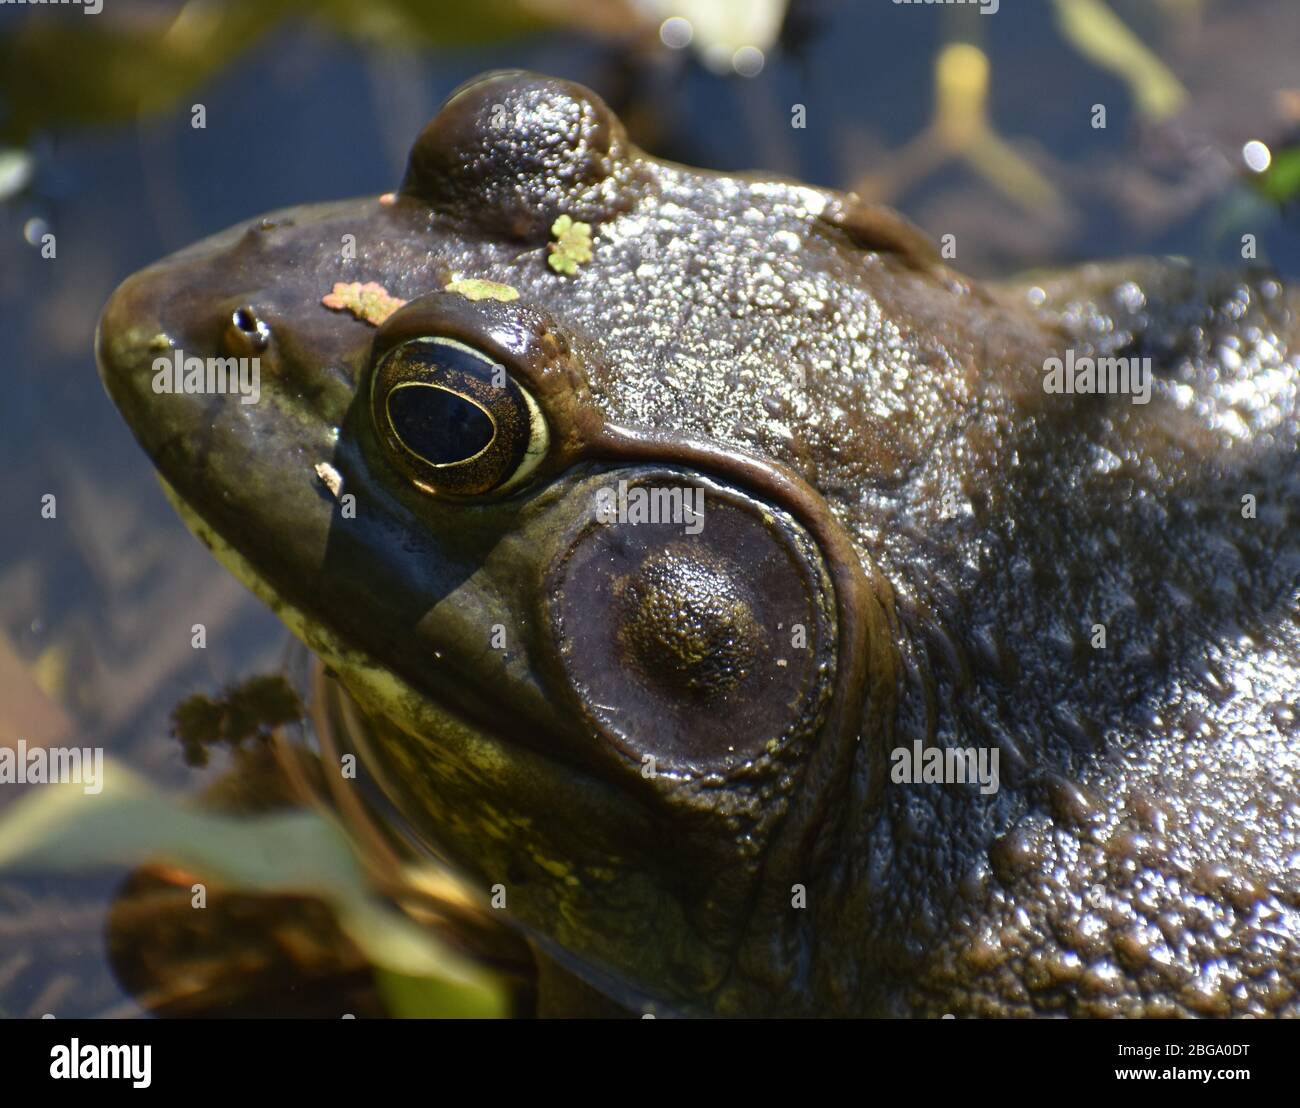 Primo piano di un maschio americano Bullfrog (Lithobates catesbeianus), che mostra il timpano prominente. Preso al bordo di Watsonville Slough in California Foto Stock